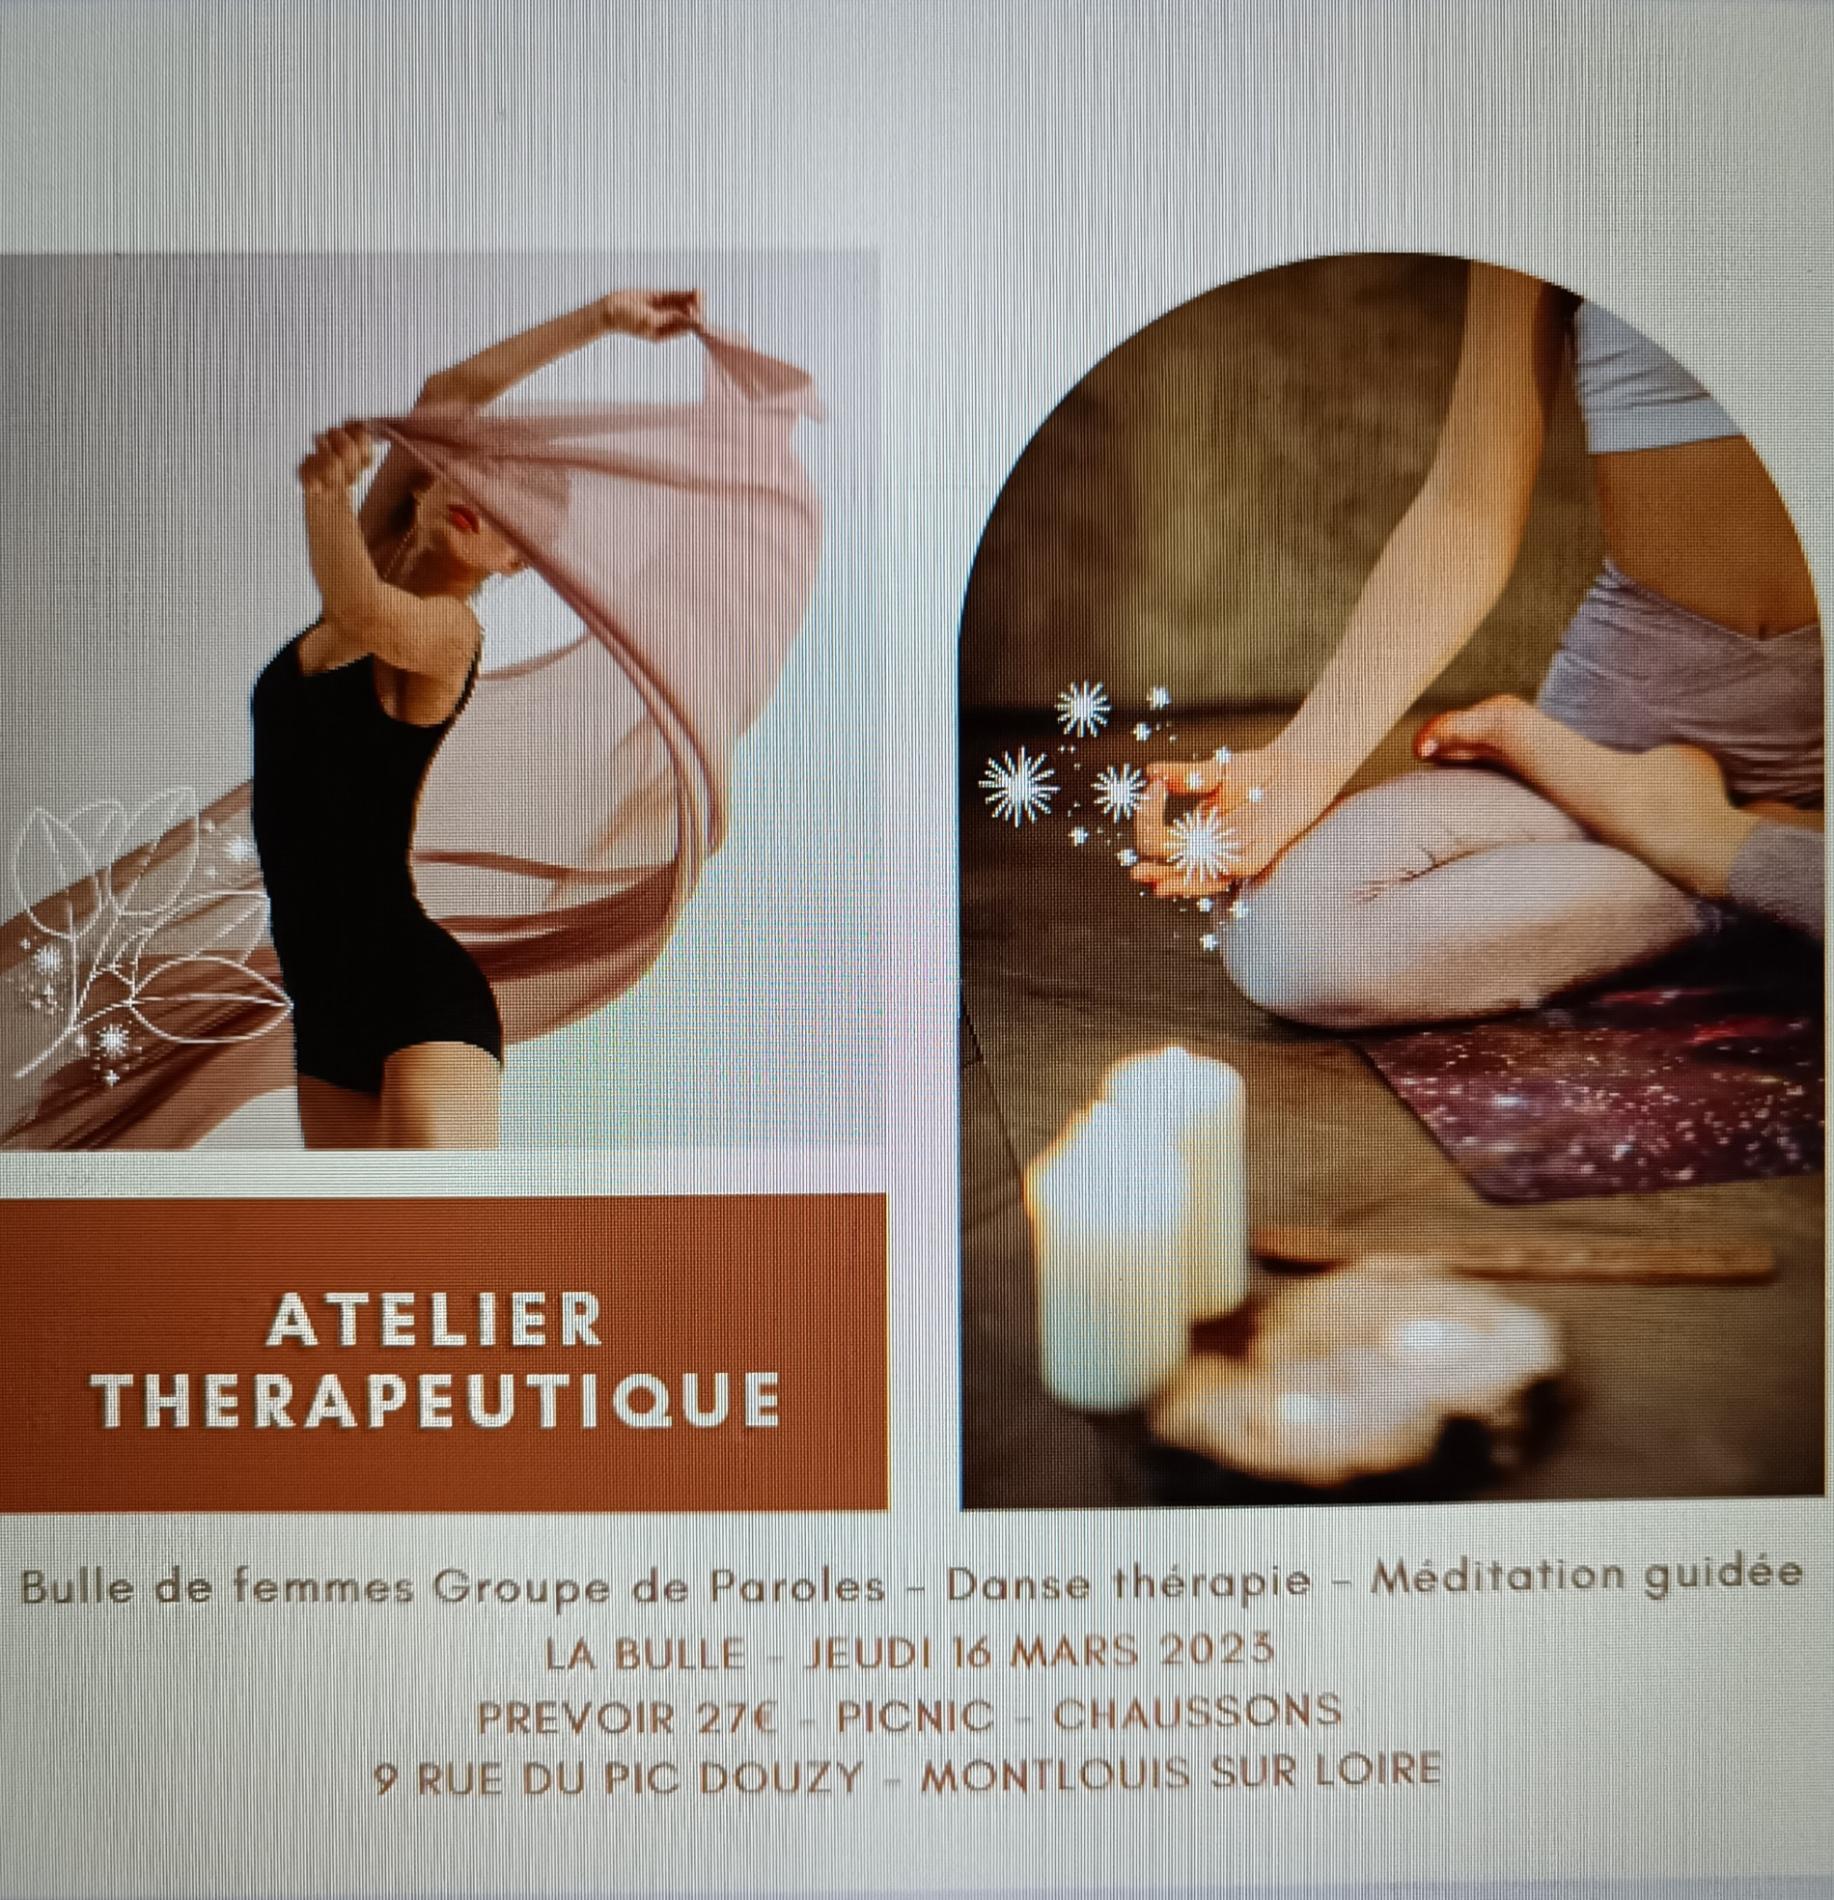 Atelier thérapeutique "Bulle de Femmes" Jeudi 16 mars 2023